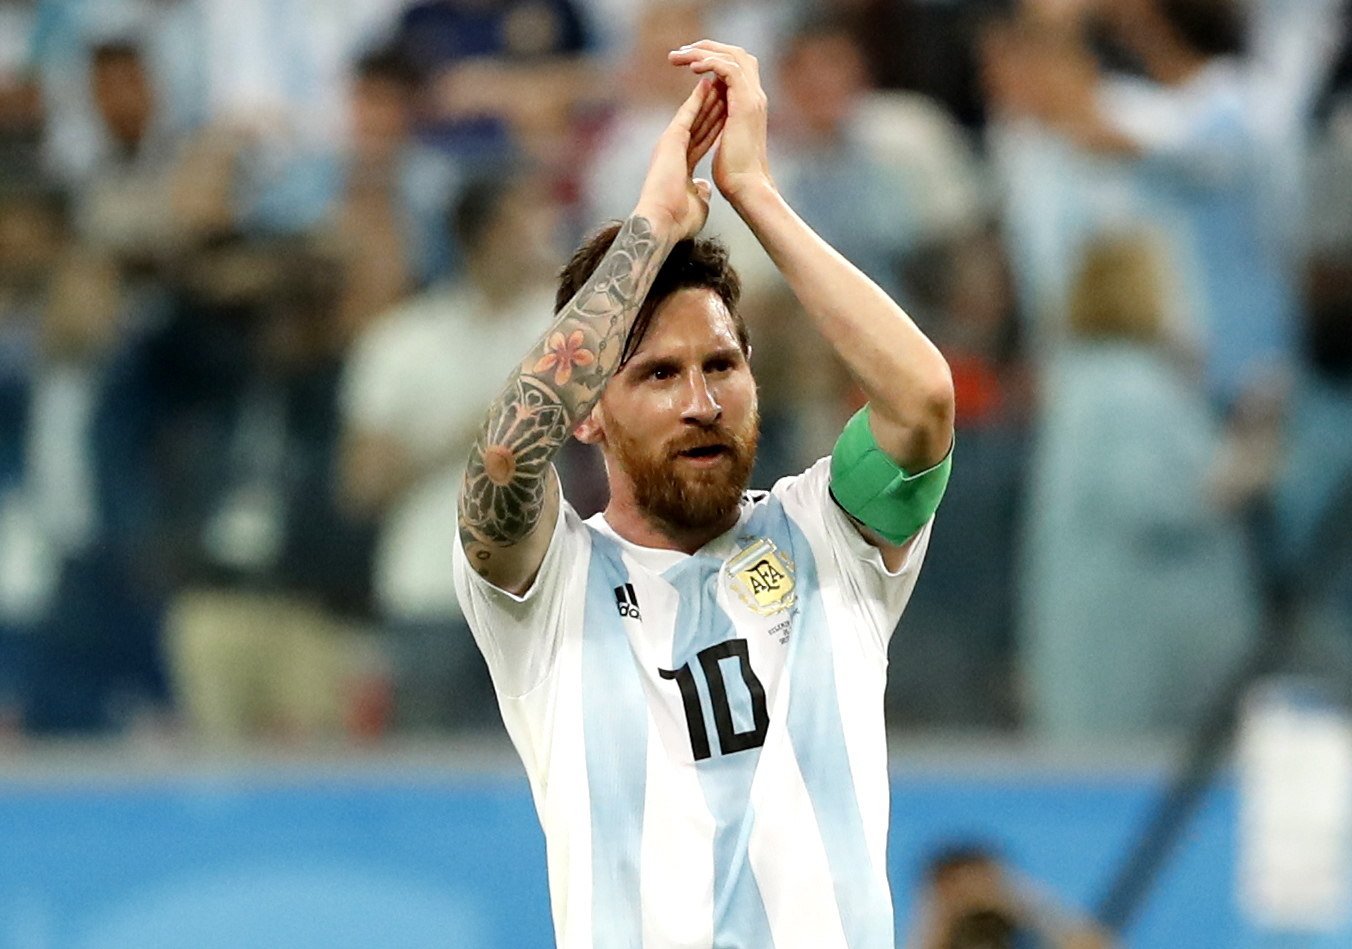 Es confirma l'incert futur de Leo Messi amb l'Argentina